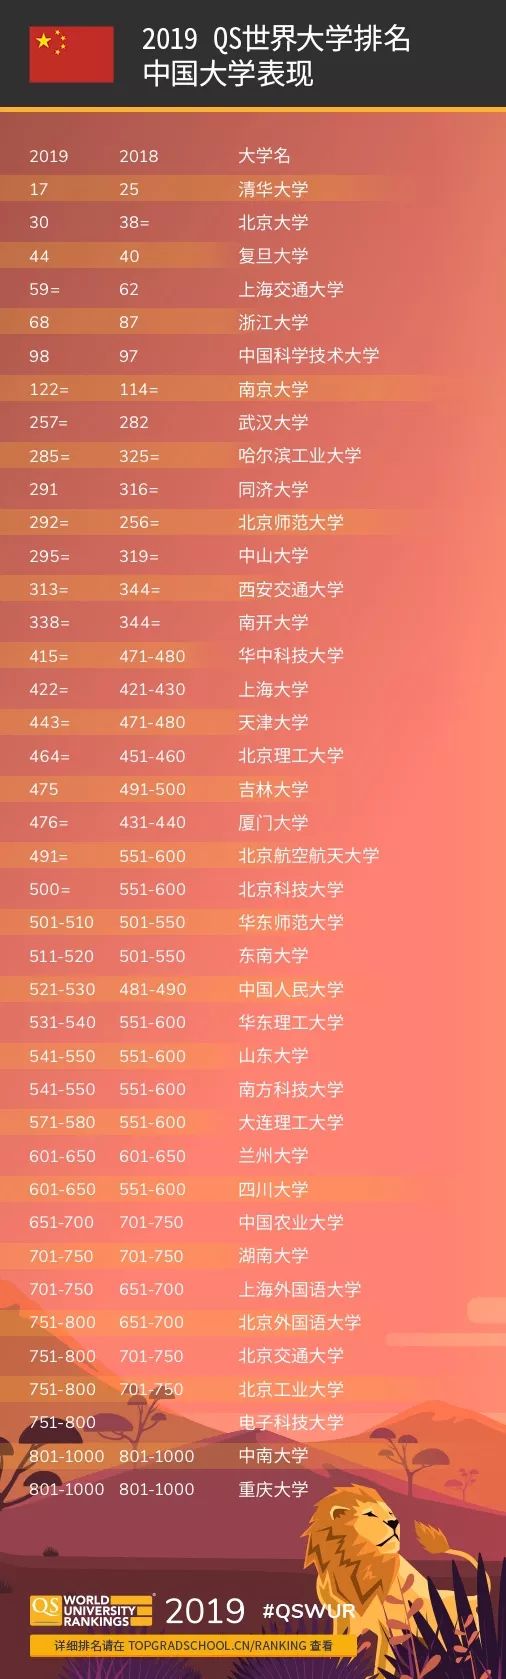 南京大学在2019 QS世界大学排名中位列122